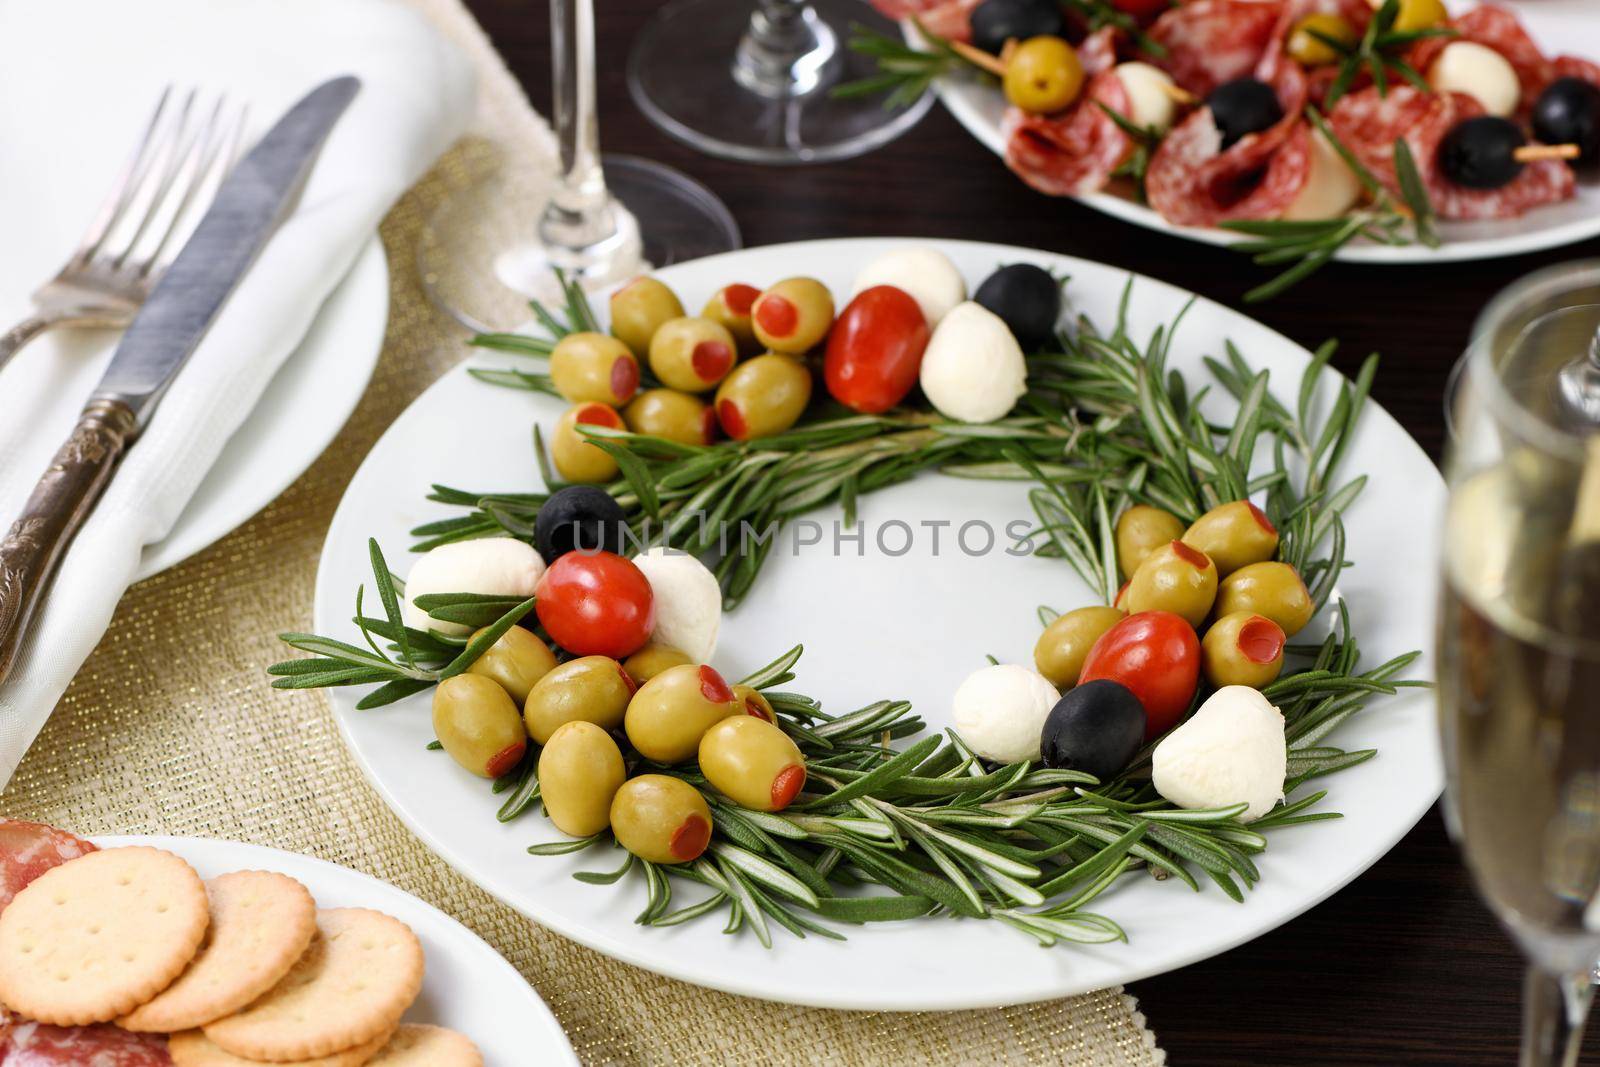 Christmas wreath - antipasto by Apolonia